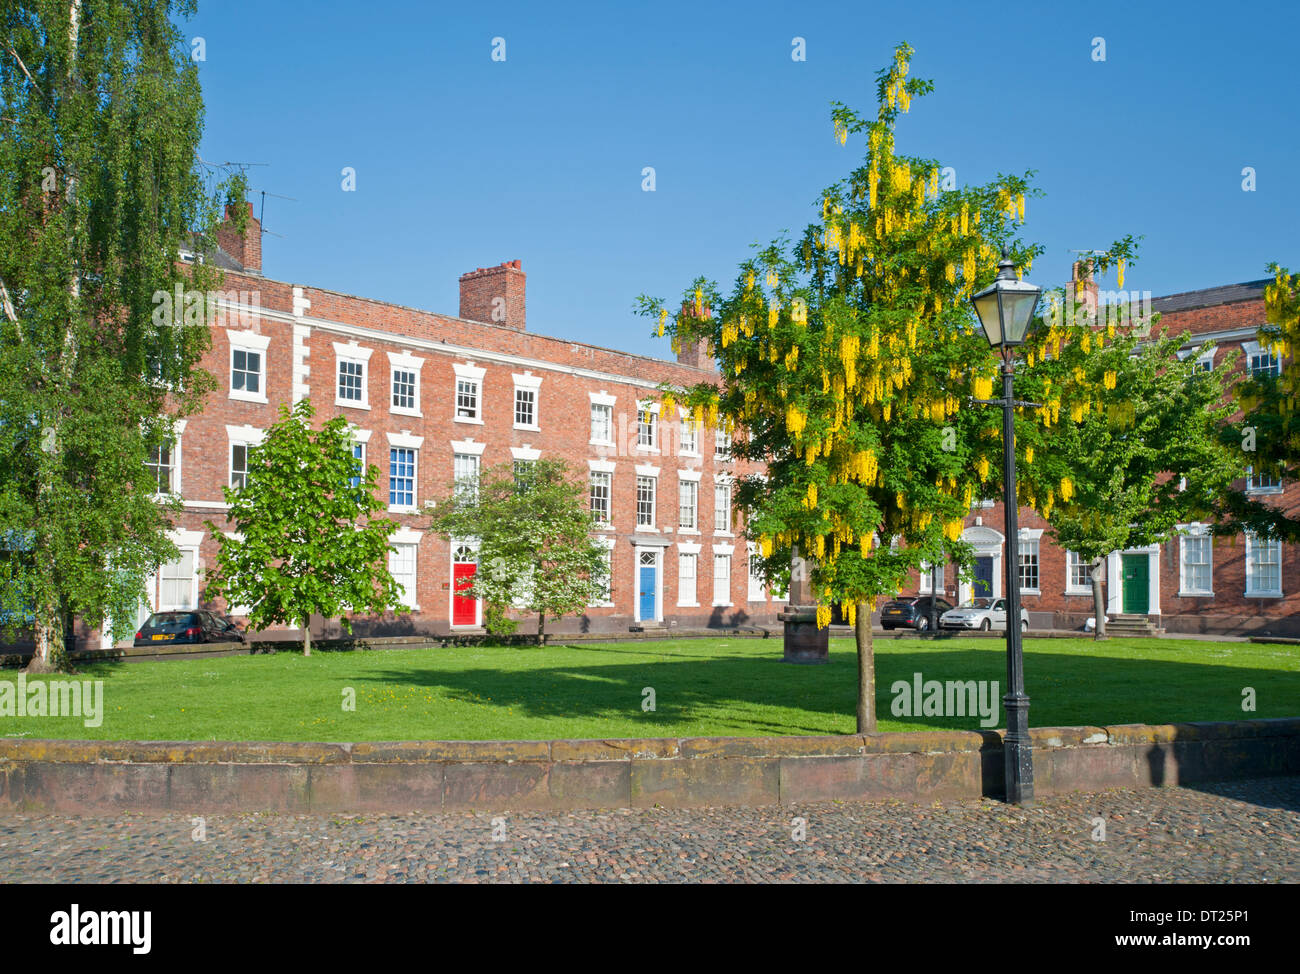 Georgianischen Häusern am Abbey Square, Chester, Cheshire, England, Vereinigtes Königreich Stockfoto